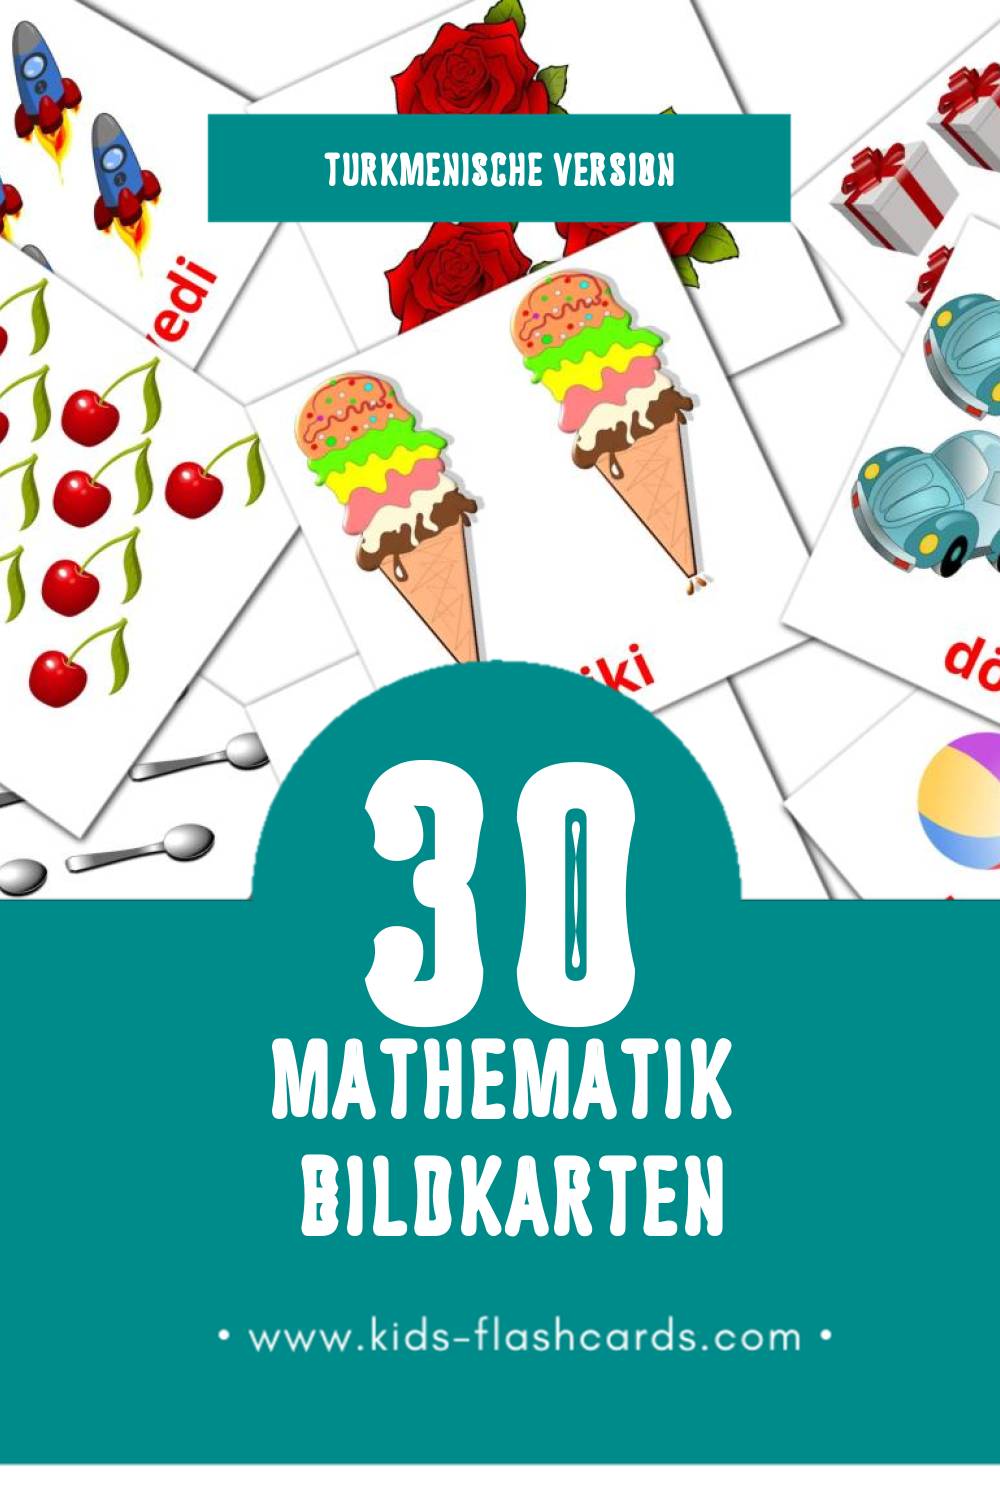 Visual Matematika Flashcards für Kleinkinder (10 Karten in Turkmenisch)